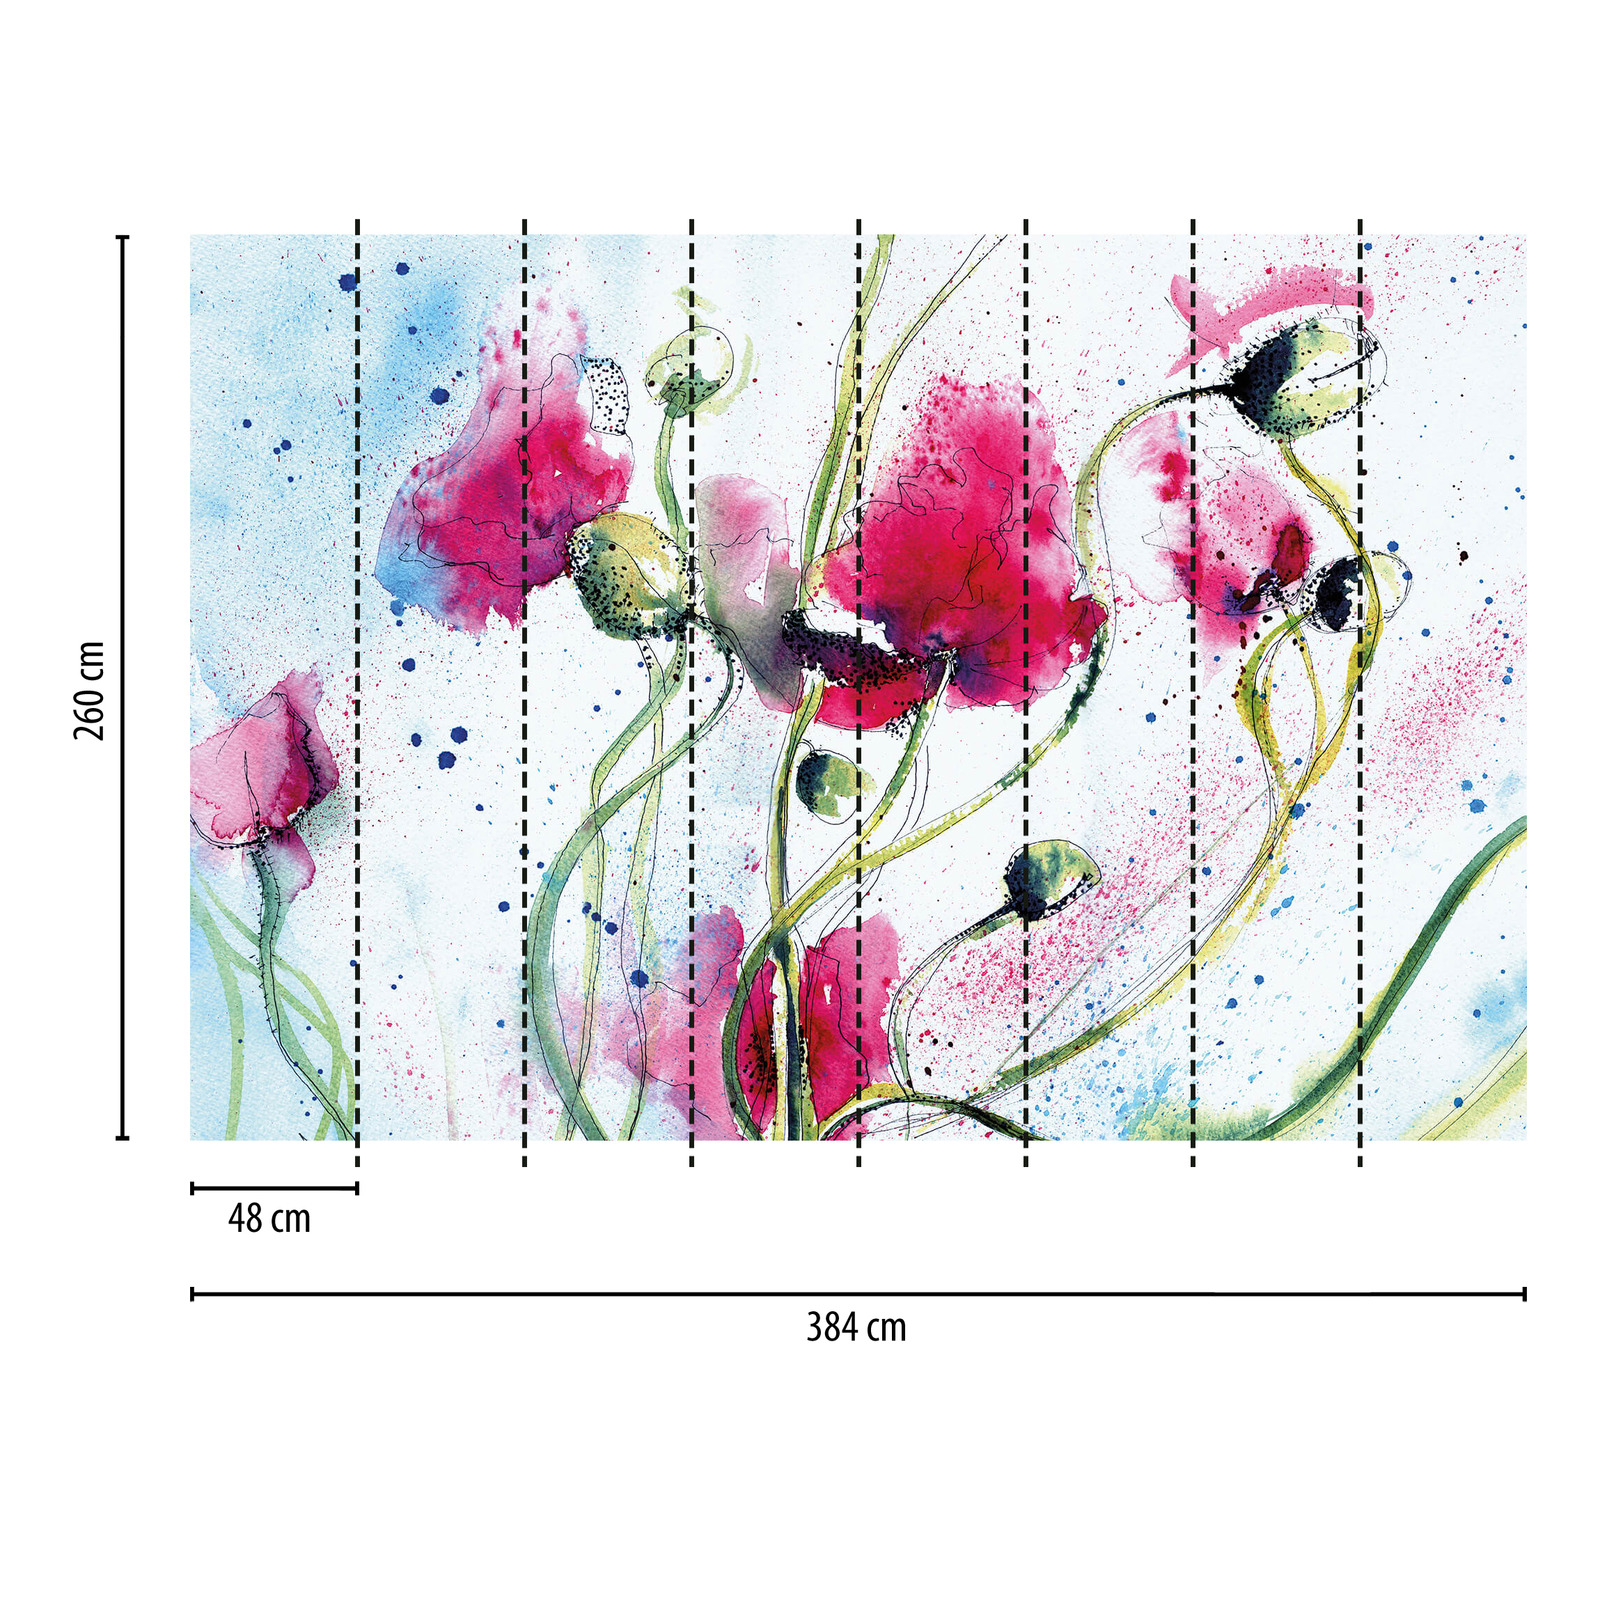             Mural de flores dibujadas - Rosa, Verde
        